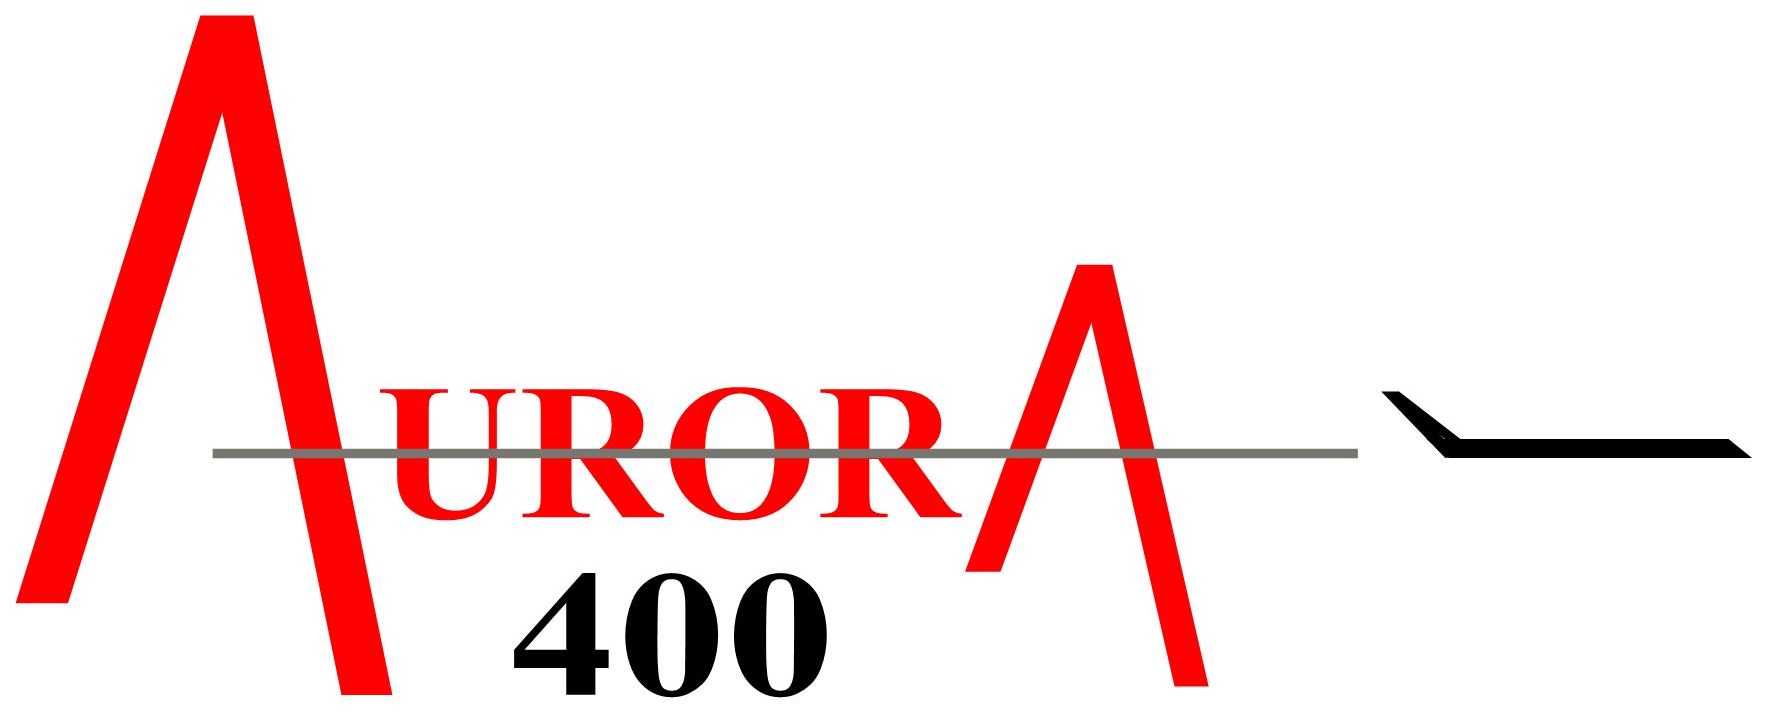 Aurora 400
Keywords: Aurora 400